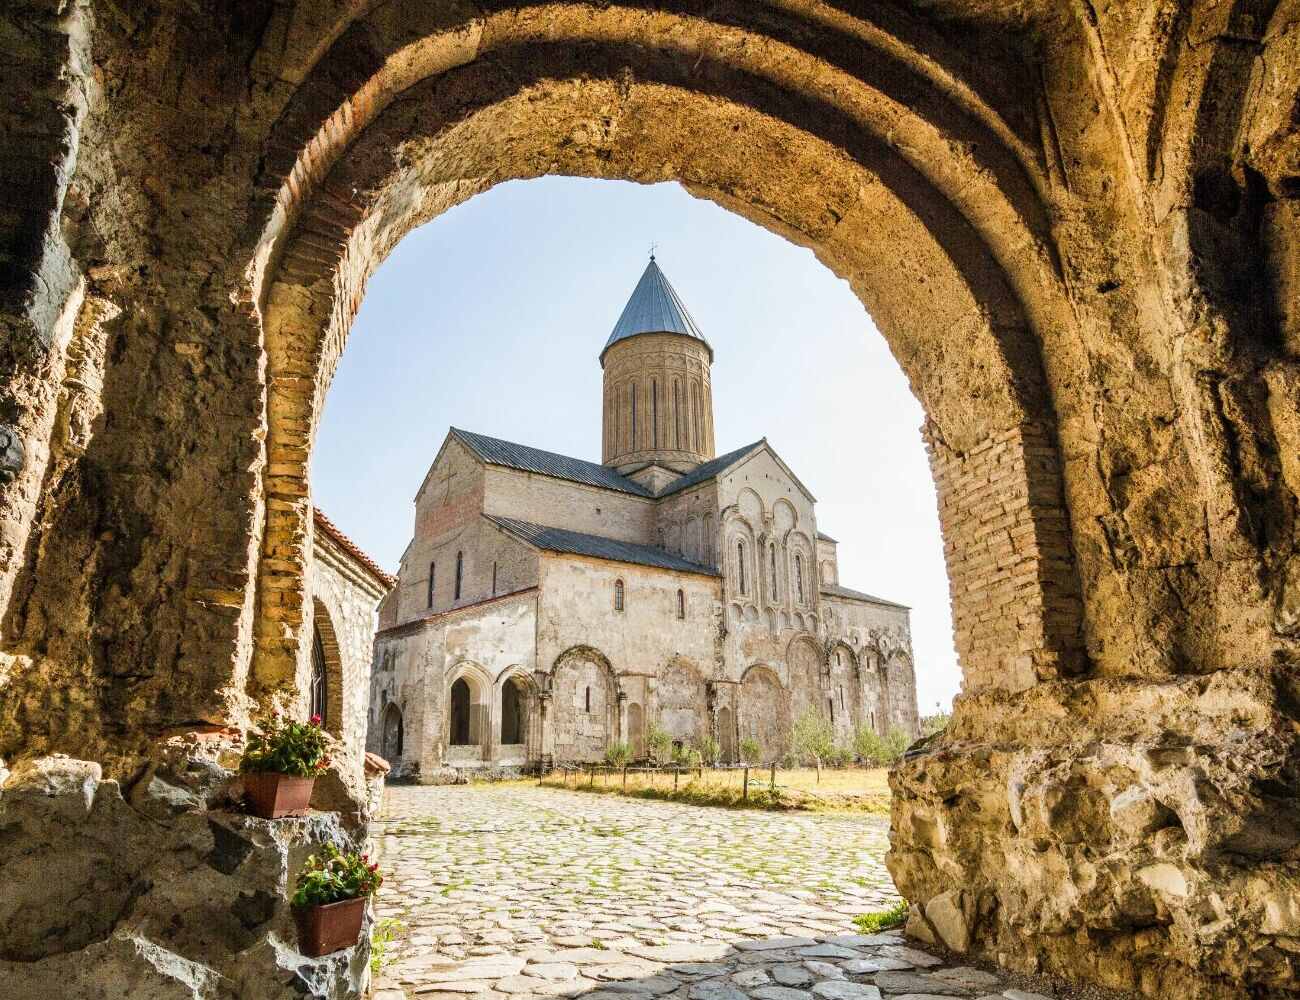 1-Day Tour to beautiful Kakheti: Journey Through the Heart of Georgia's Wine Region